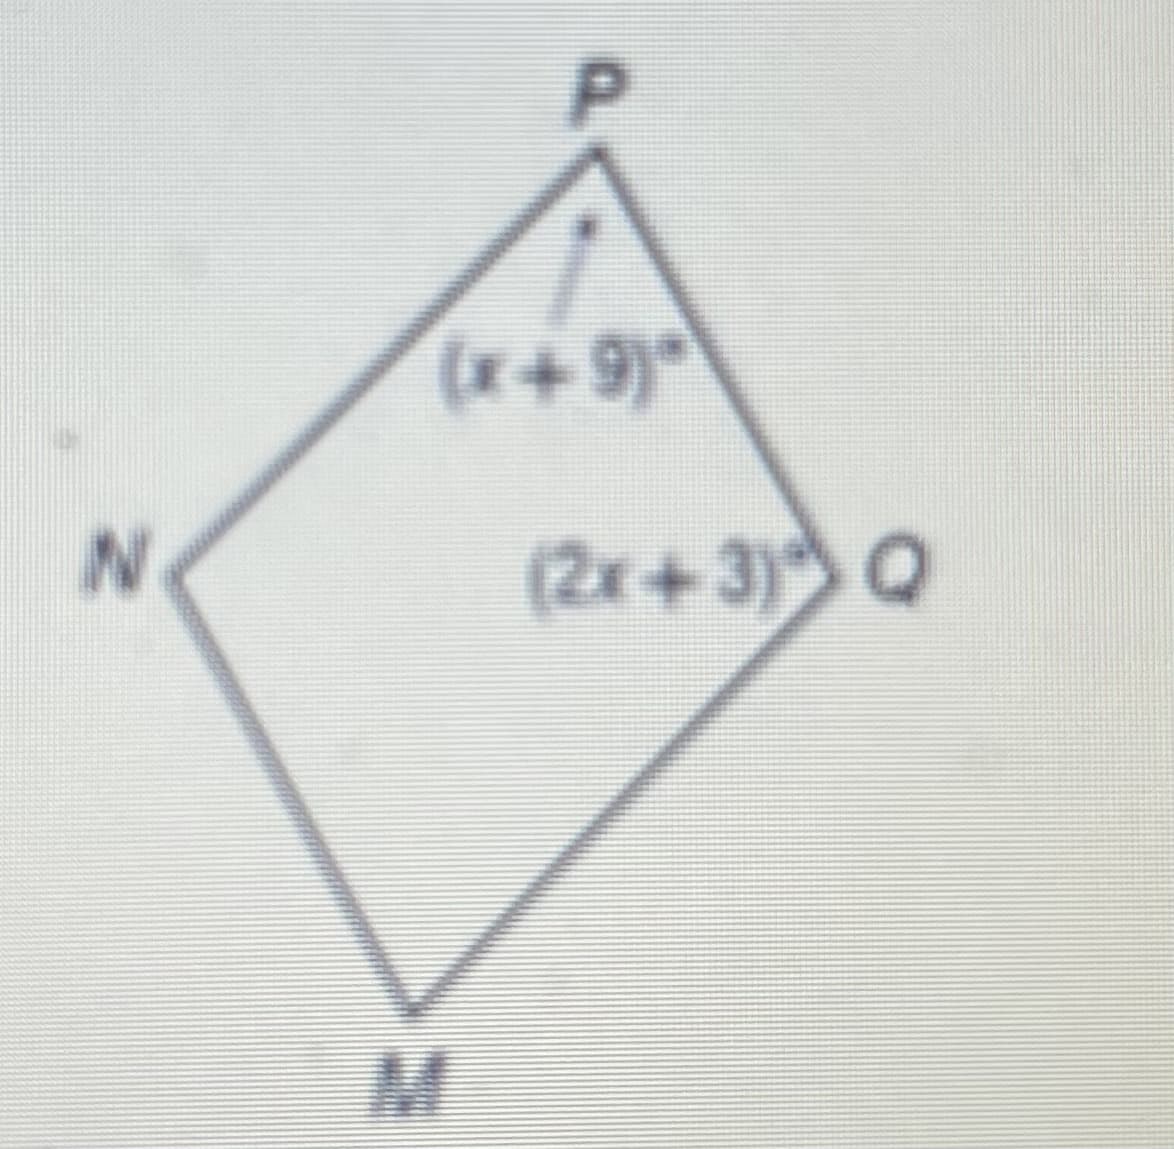 P.
(x+9)°
(2x+3) Q
M.
